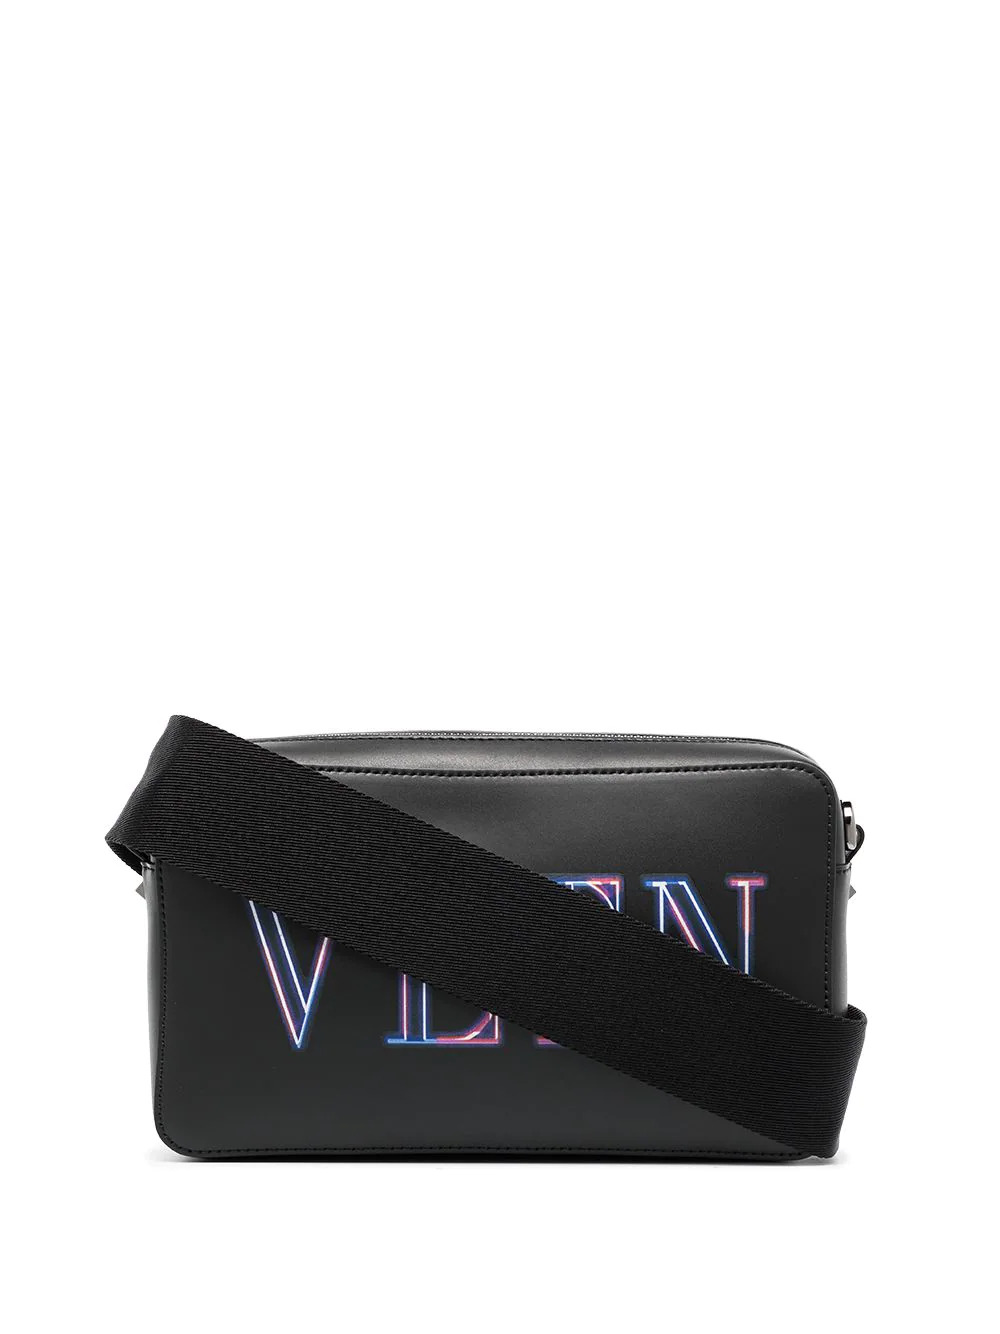 Neon VLTN crossbody bag